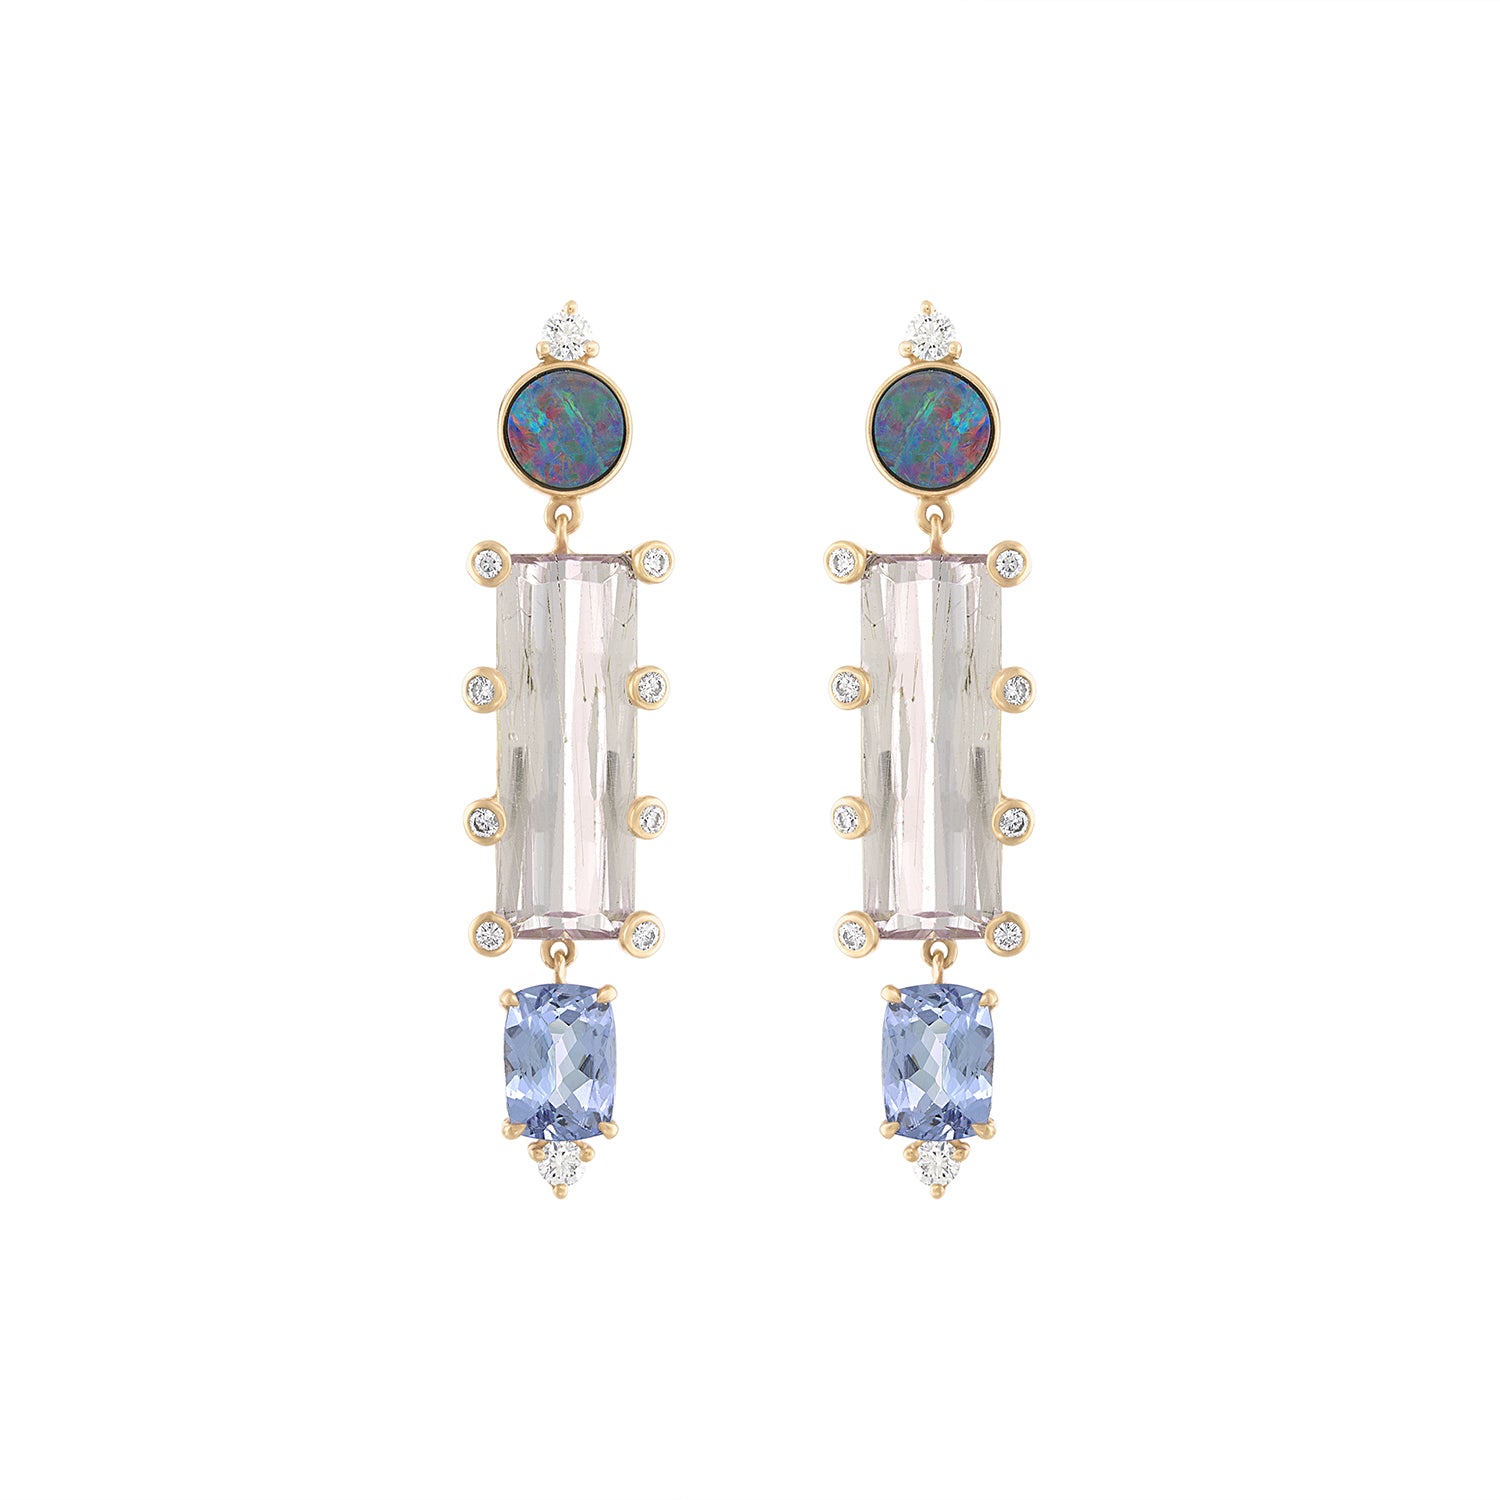 Morganite, Tanzanite and Boulder Opal Earrings by Eden Presley